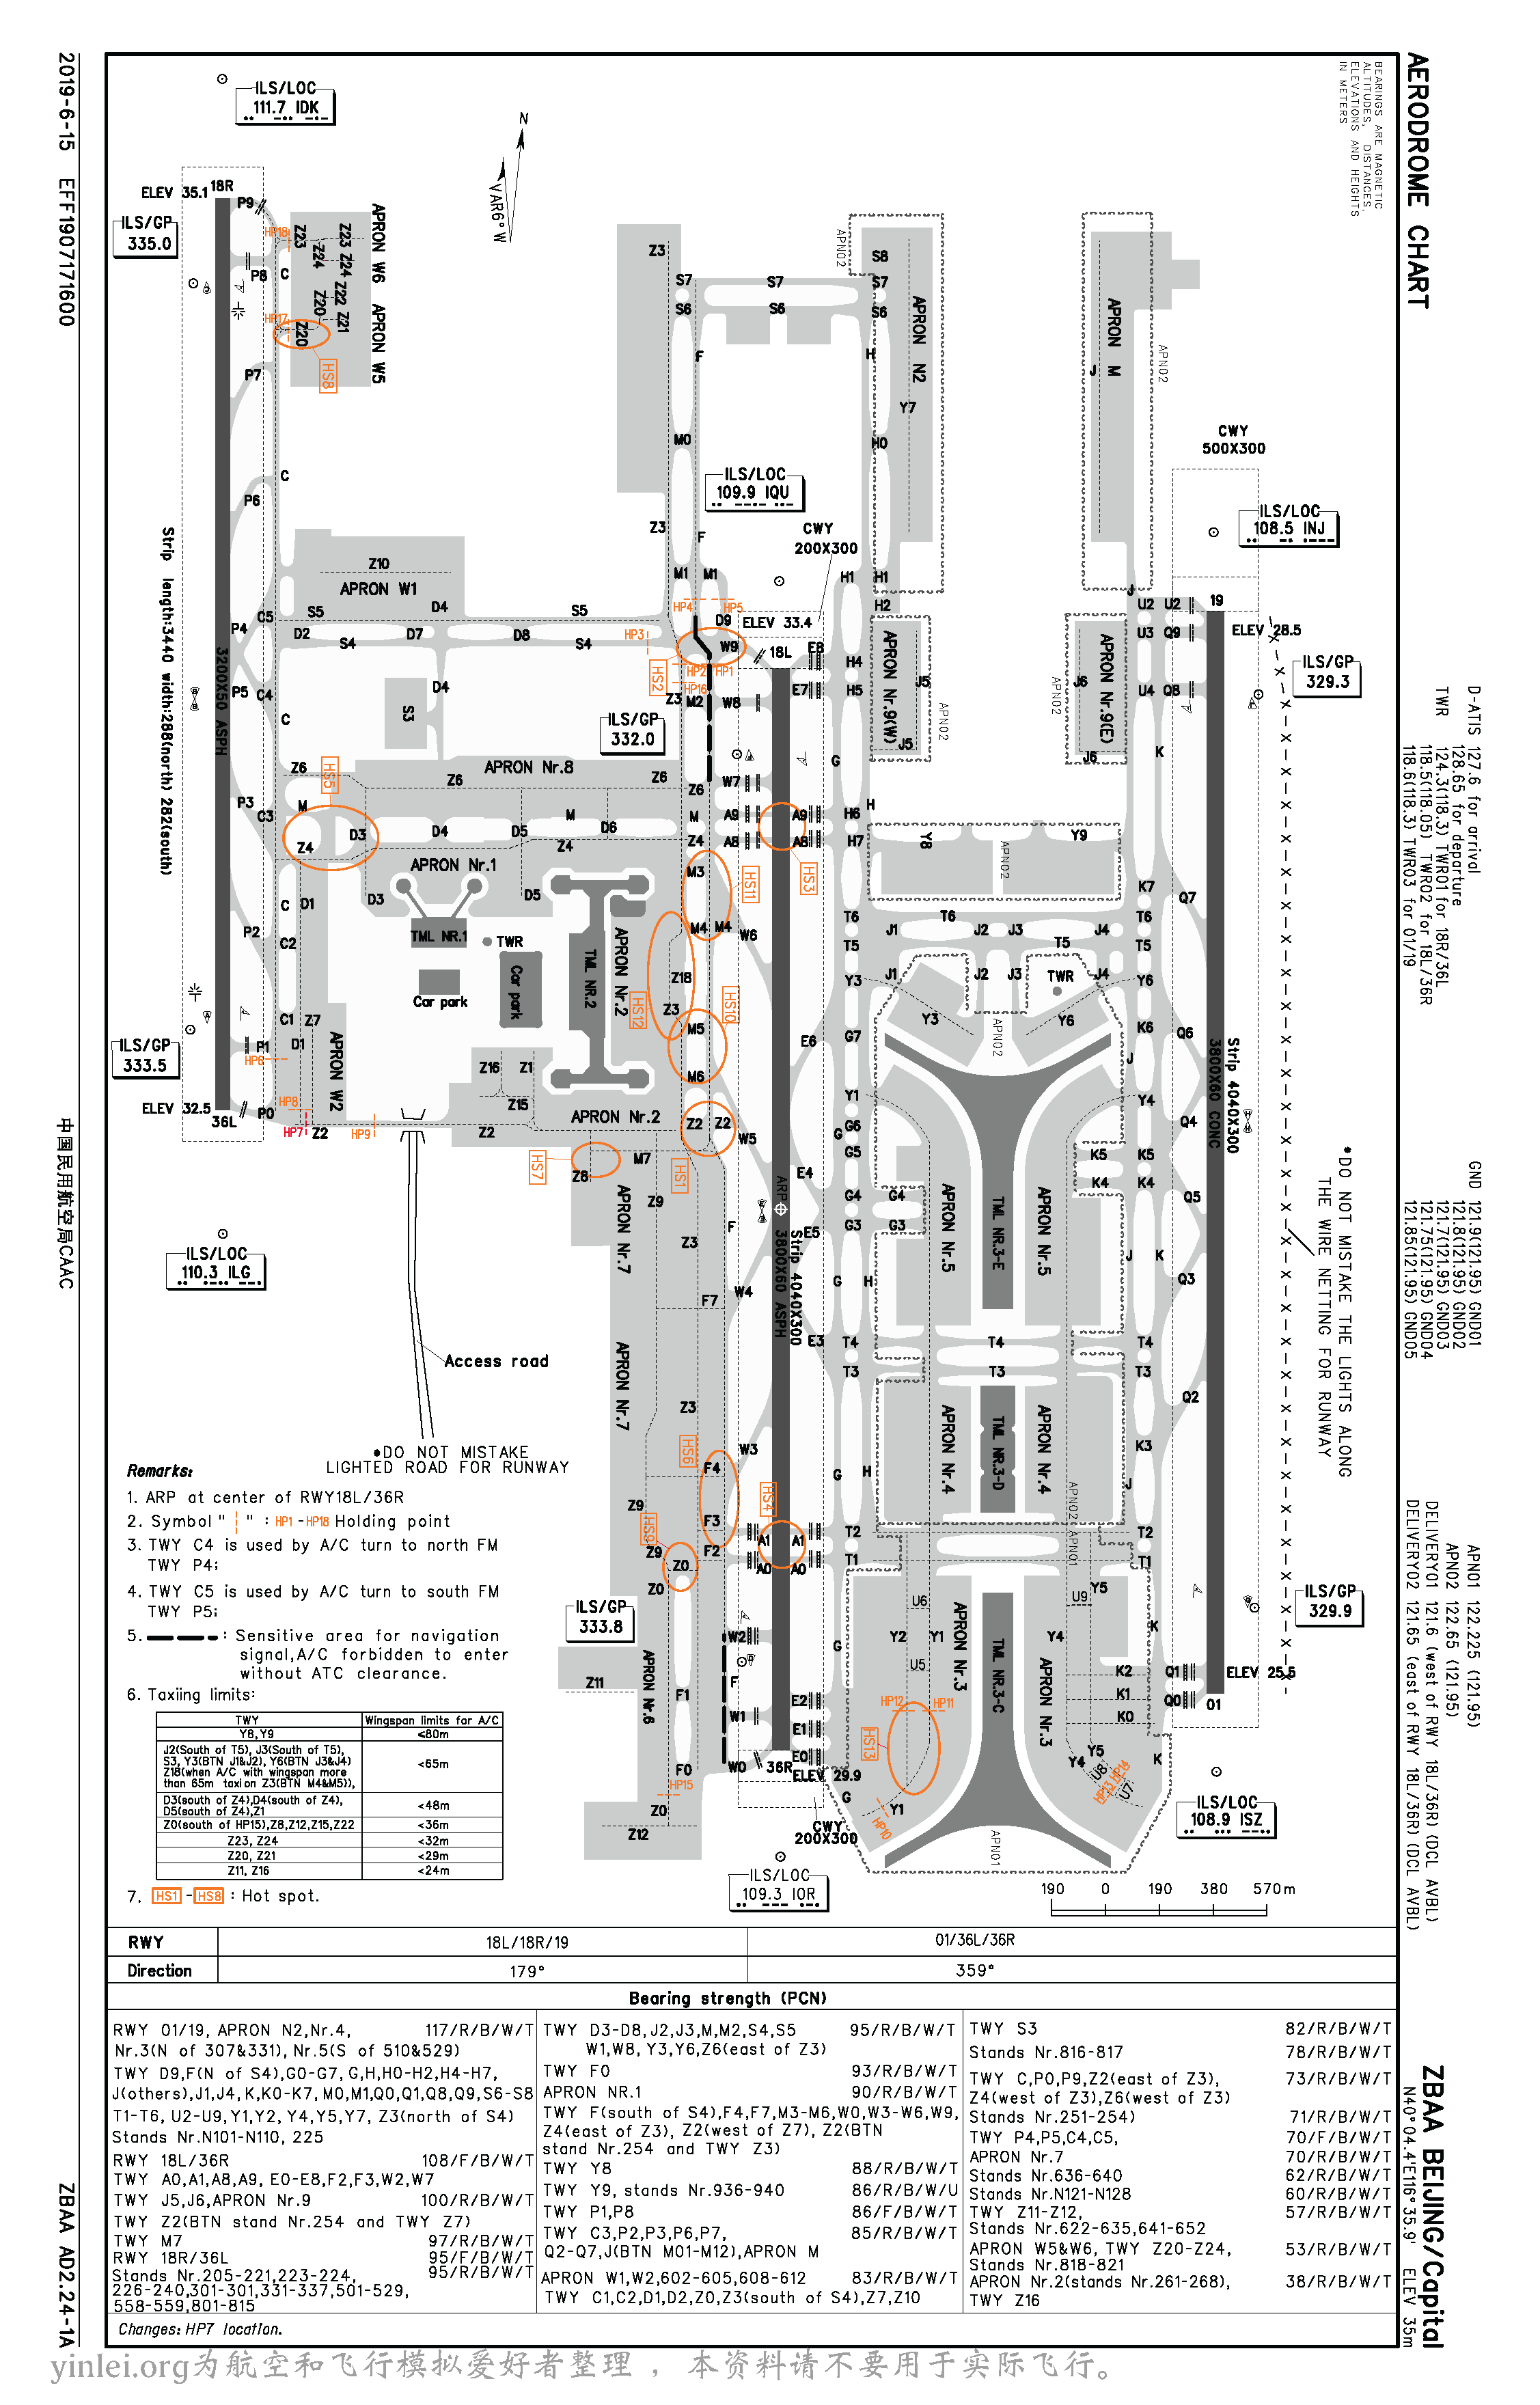 求北京首都机场平面图